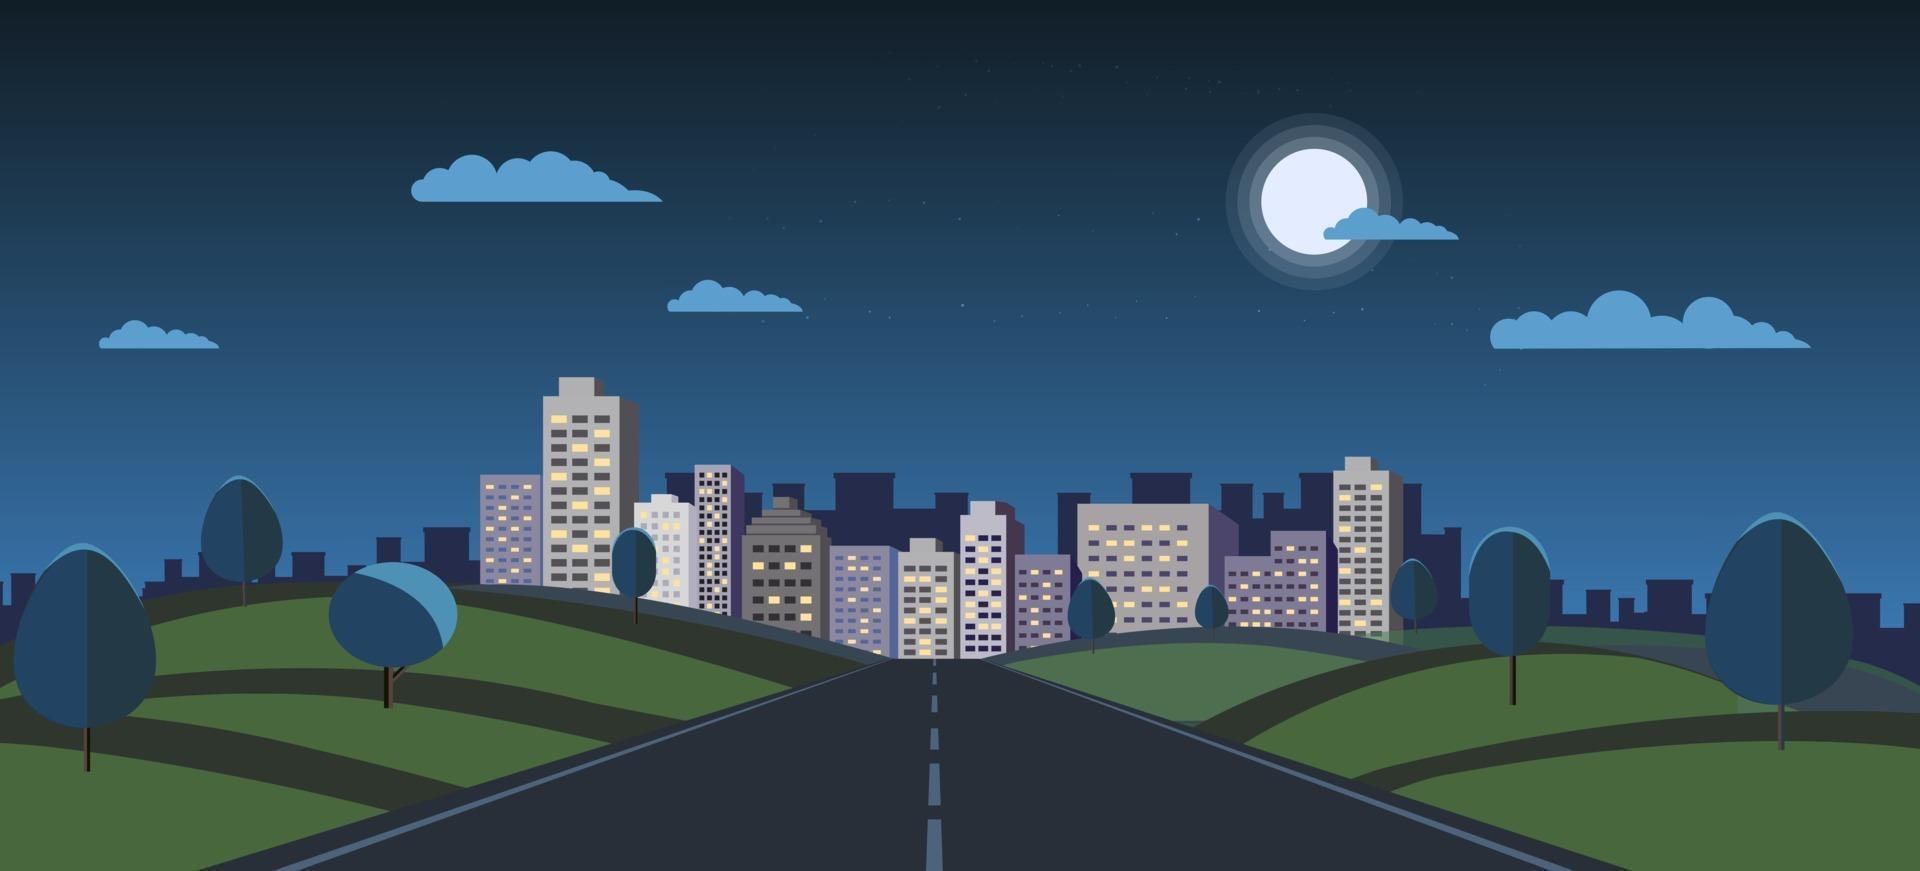 natt stadsbild med naturlandskap vektorillustration. offentlig park och nattstad med måne och himmel. mörk scen med väg till stad. byggnad nattvy vektor